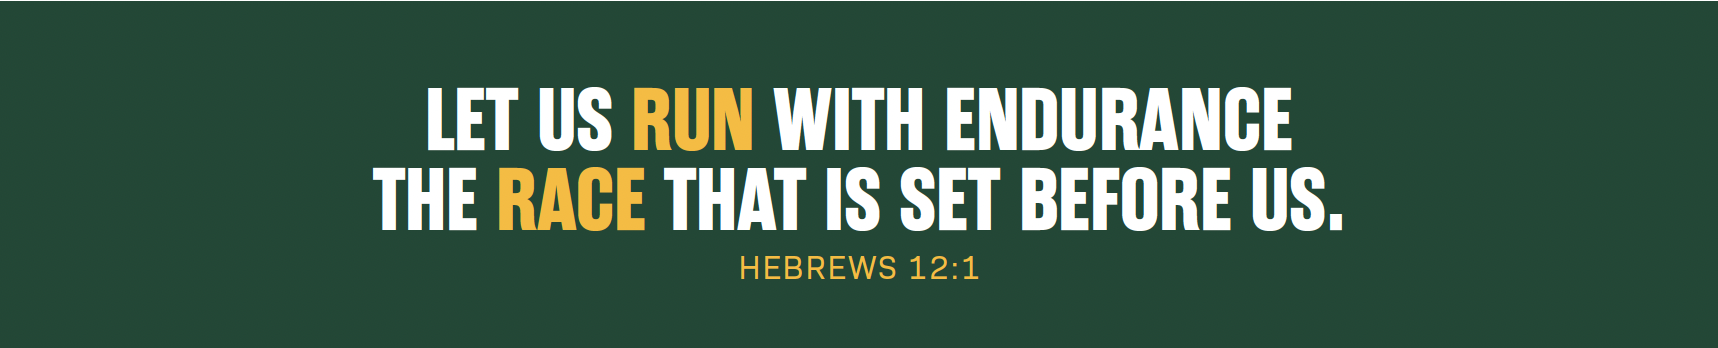 Hebrews 12:1